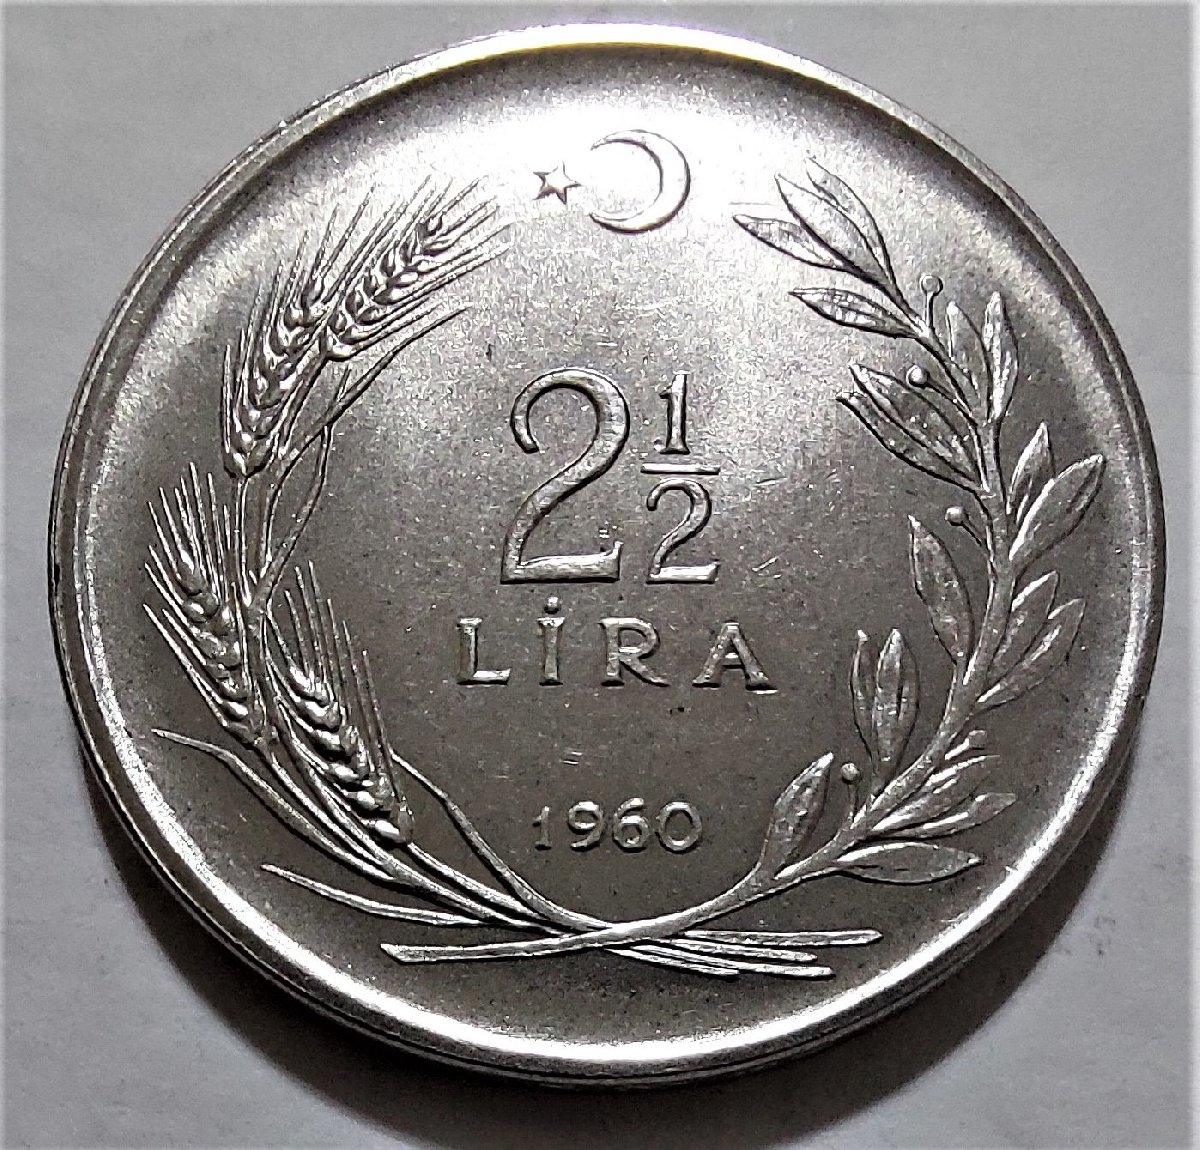 2.5 TL'lik metal paralar ilk kez 1960 yılında piyasaya sürülmüş, 29 yıl kullanıldıktan sonra paranın değerinin aşırı düşmesiyle 1989 yılında tedavülden kaldırılmıştı.